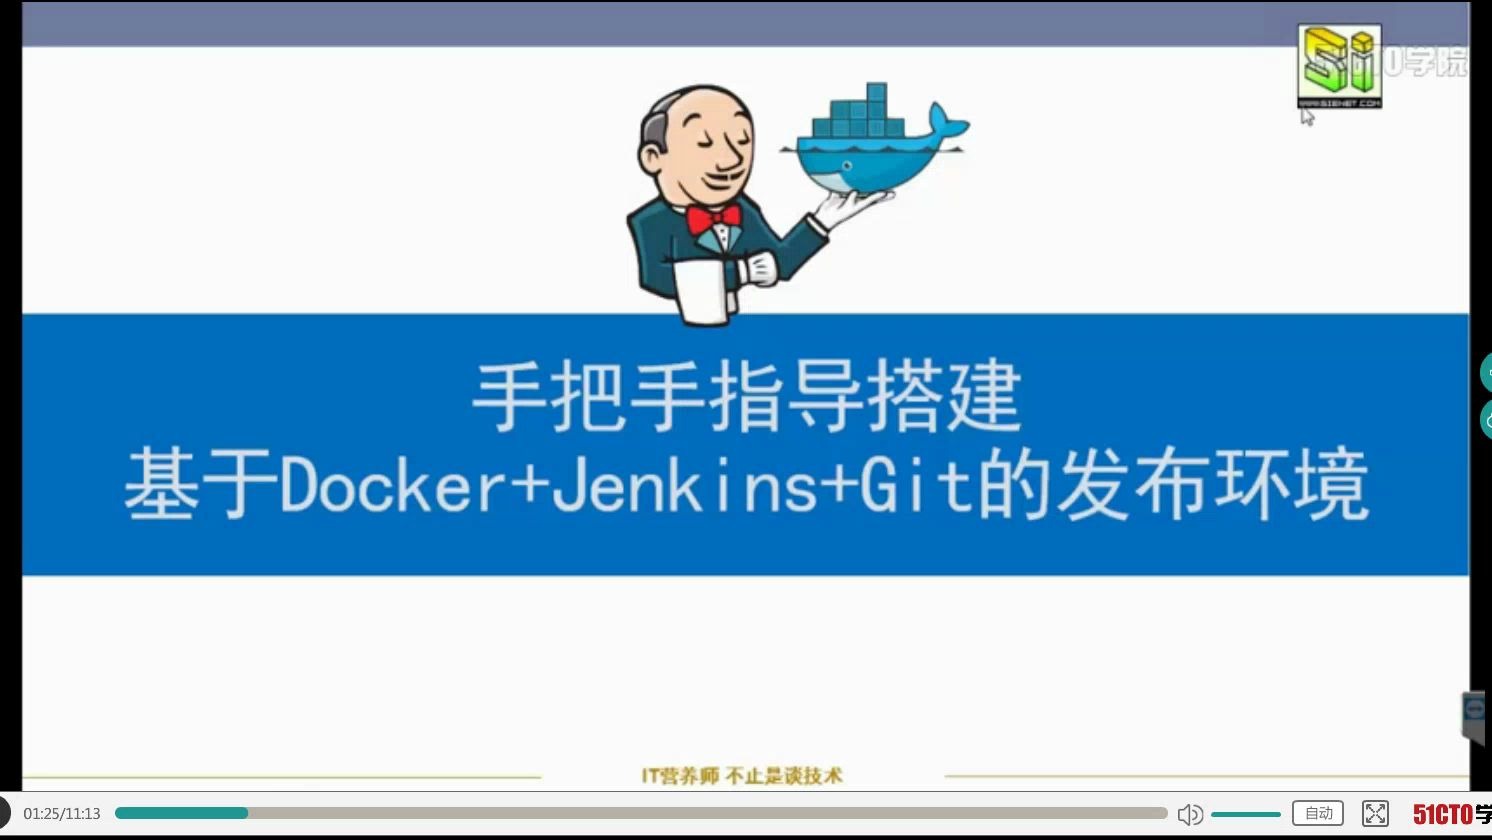 基于Docker+Jenkins+Git 实现企业持续集成持续部署（CI/CD）